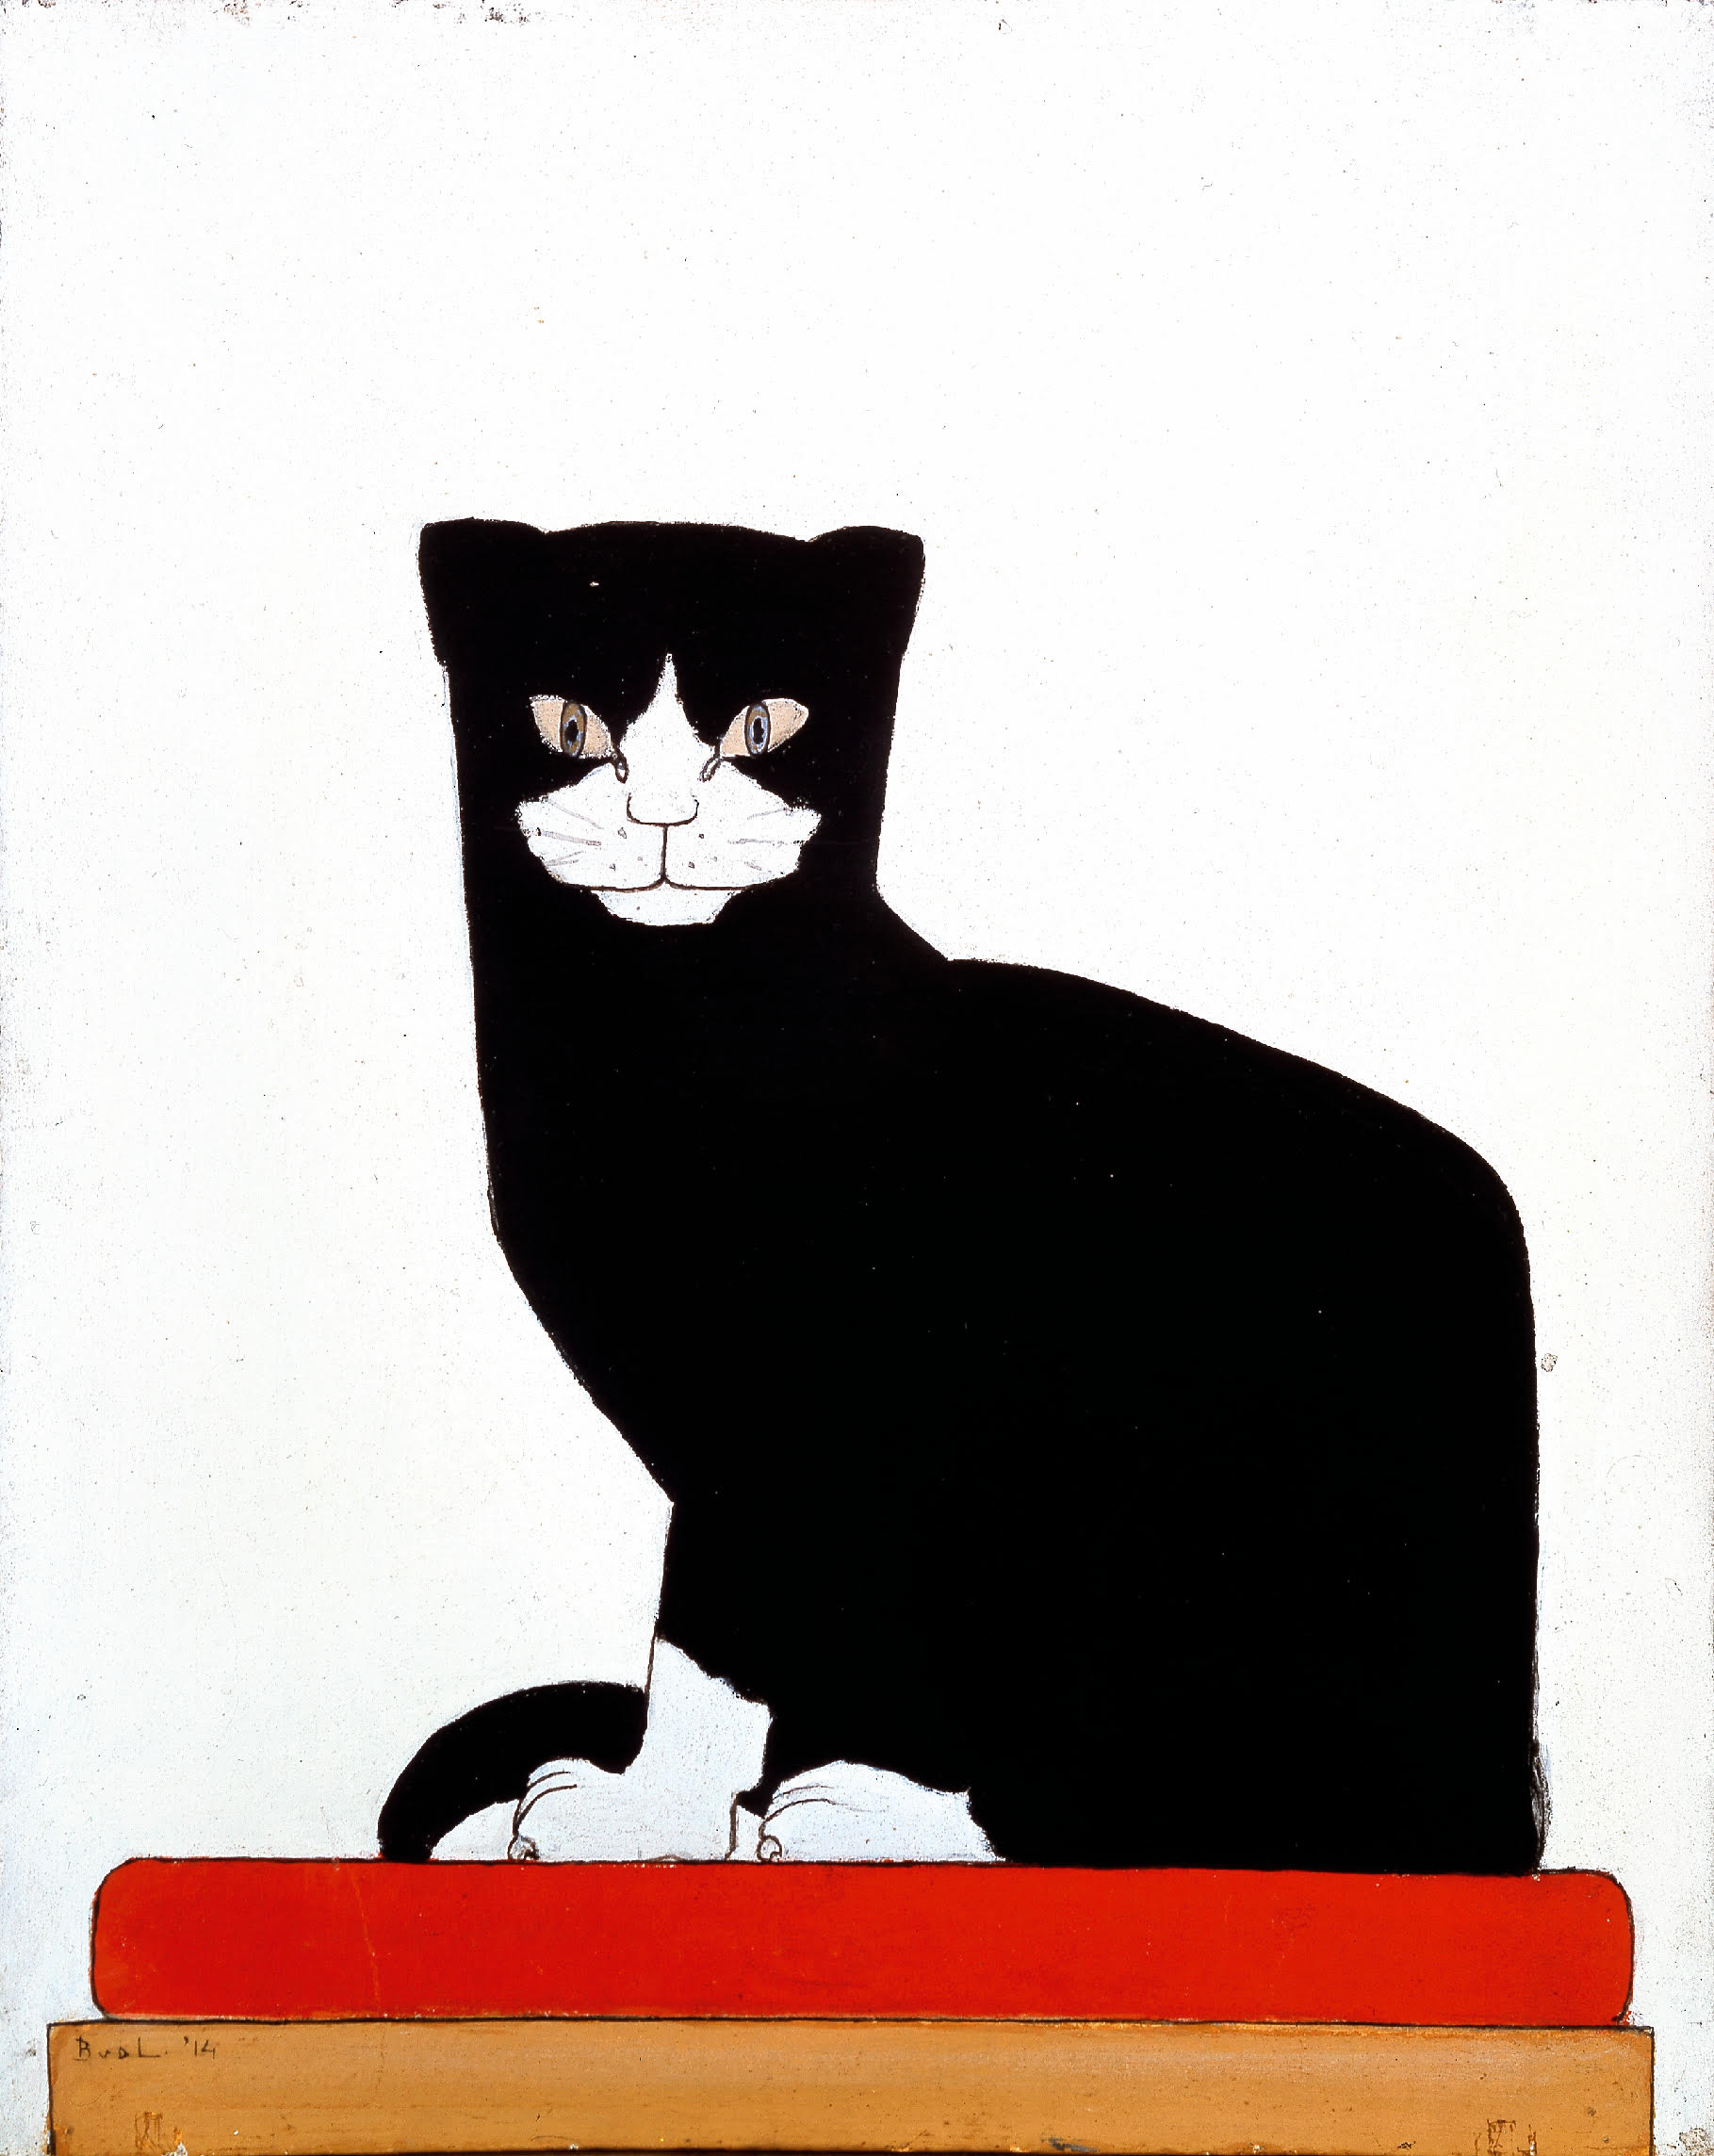 The Cat by Bart van der Leck - 1914 - 37 x 29 cm Kröller-Müller Museum